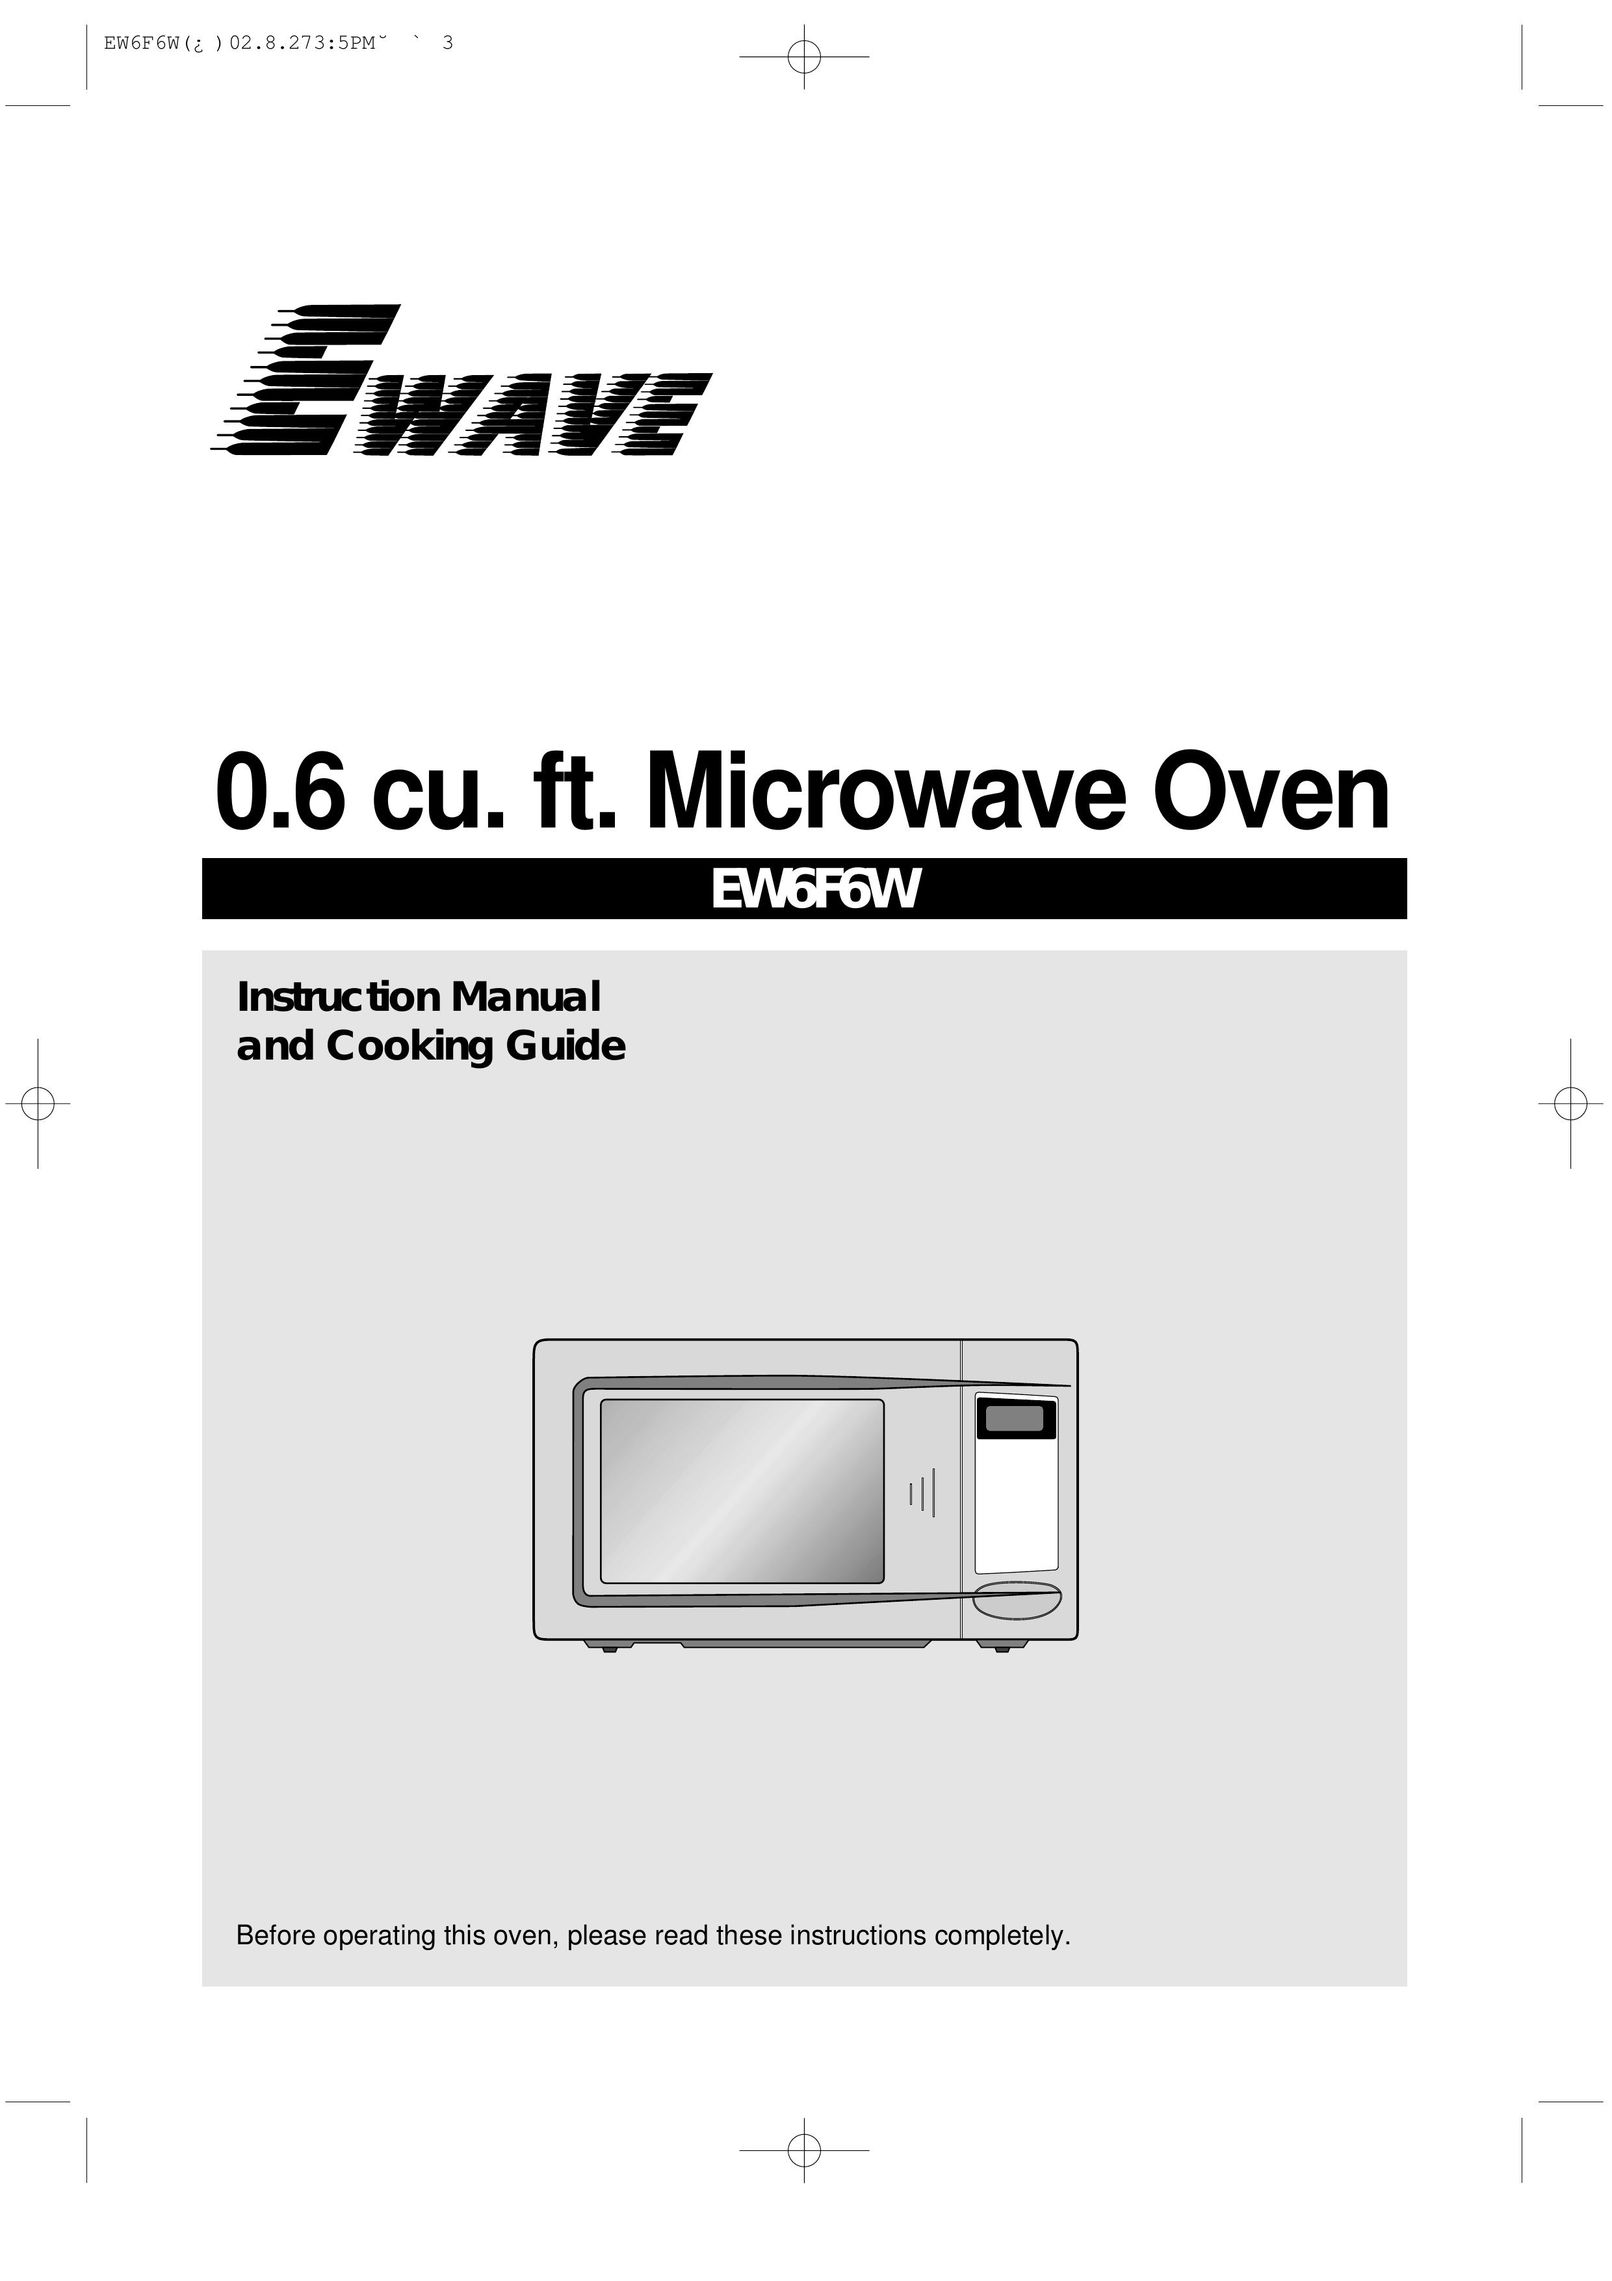 Daewoo EW6F6W Microwave Oven User Manual